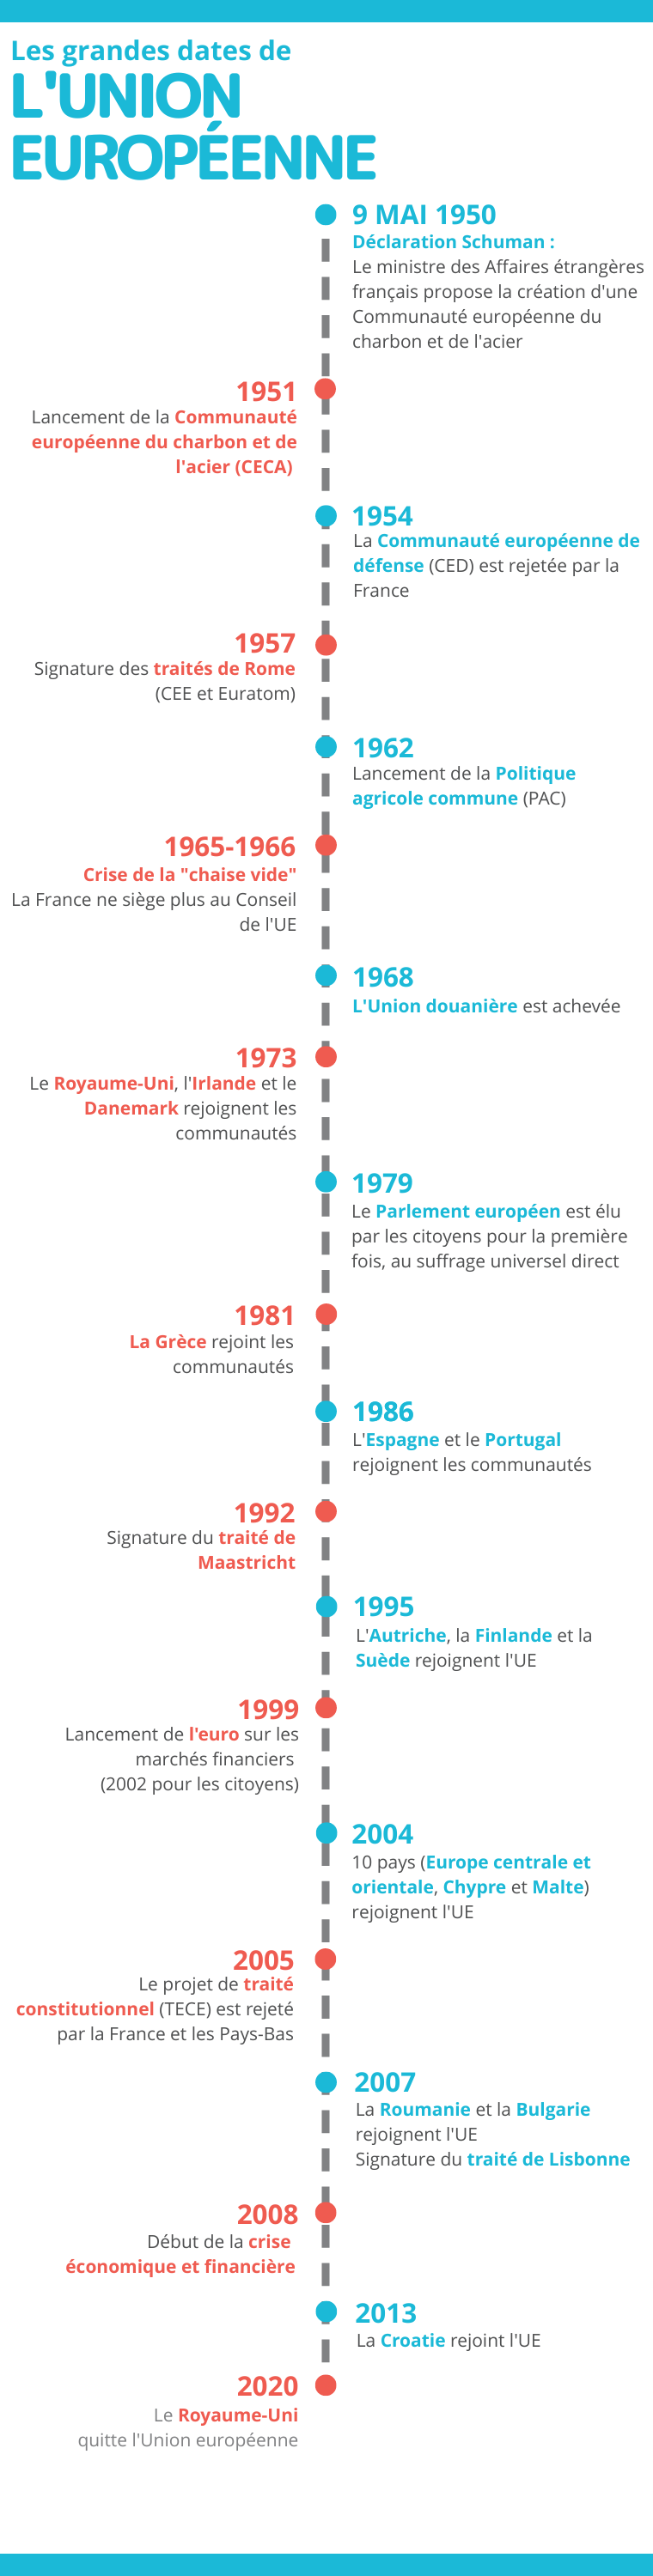 Histoire les grandes dates de l'UE - infographie